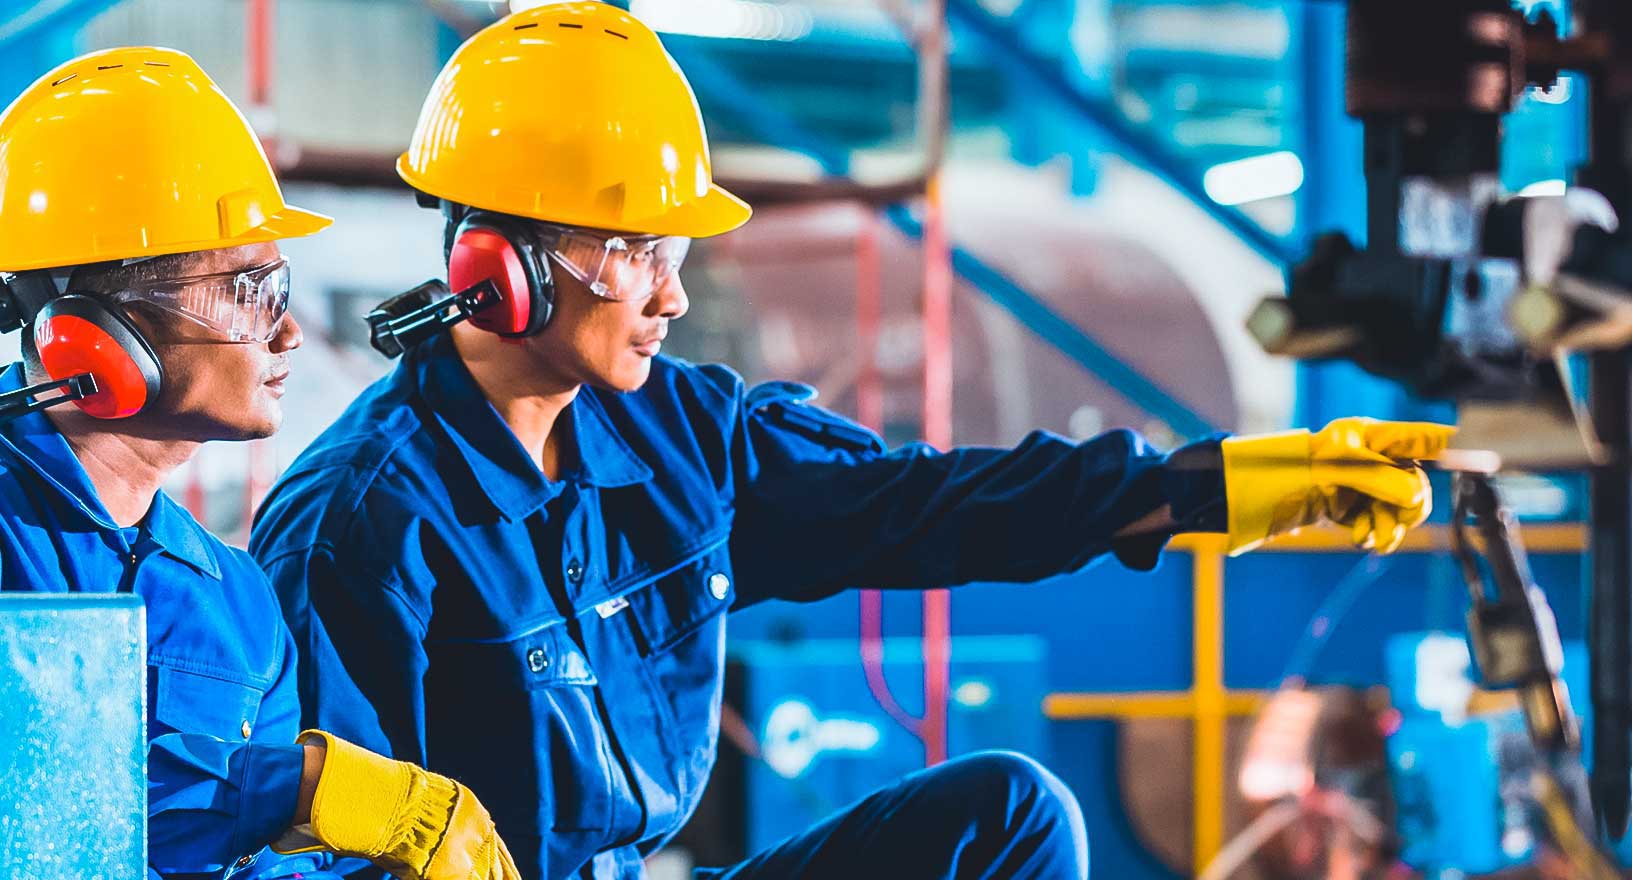 Trabalhadores em ambiente de fabricação, praticando a segurança no local de trabalho com capacetes, proteção auricular e luvas